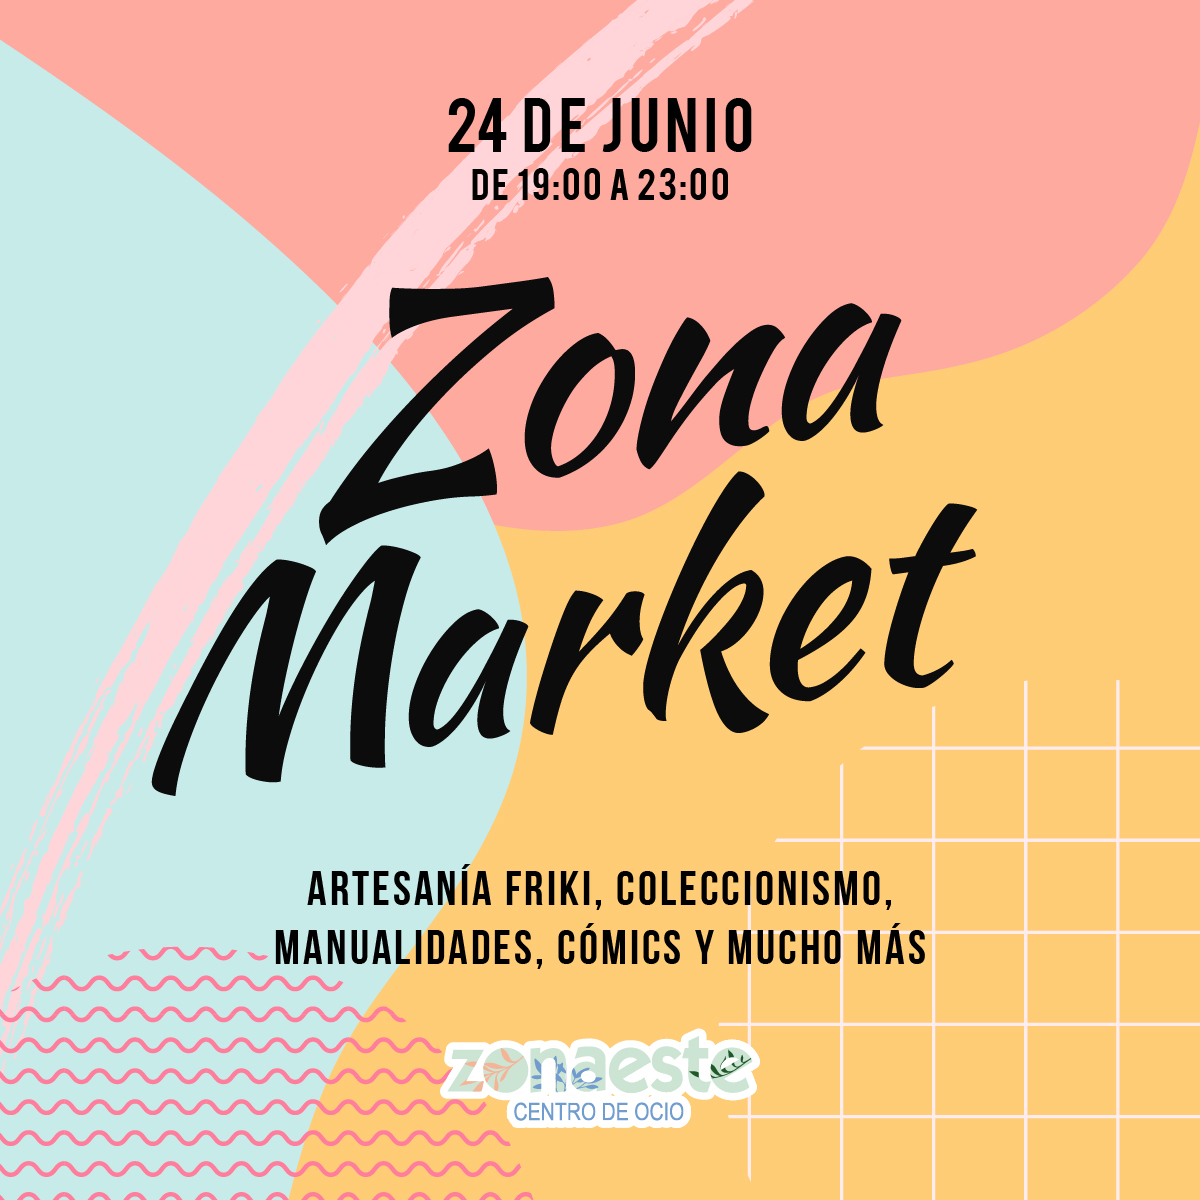 Zona Market